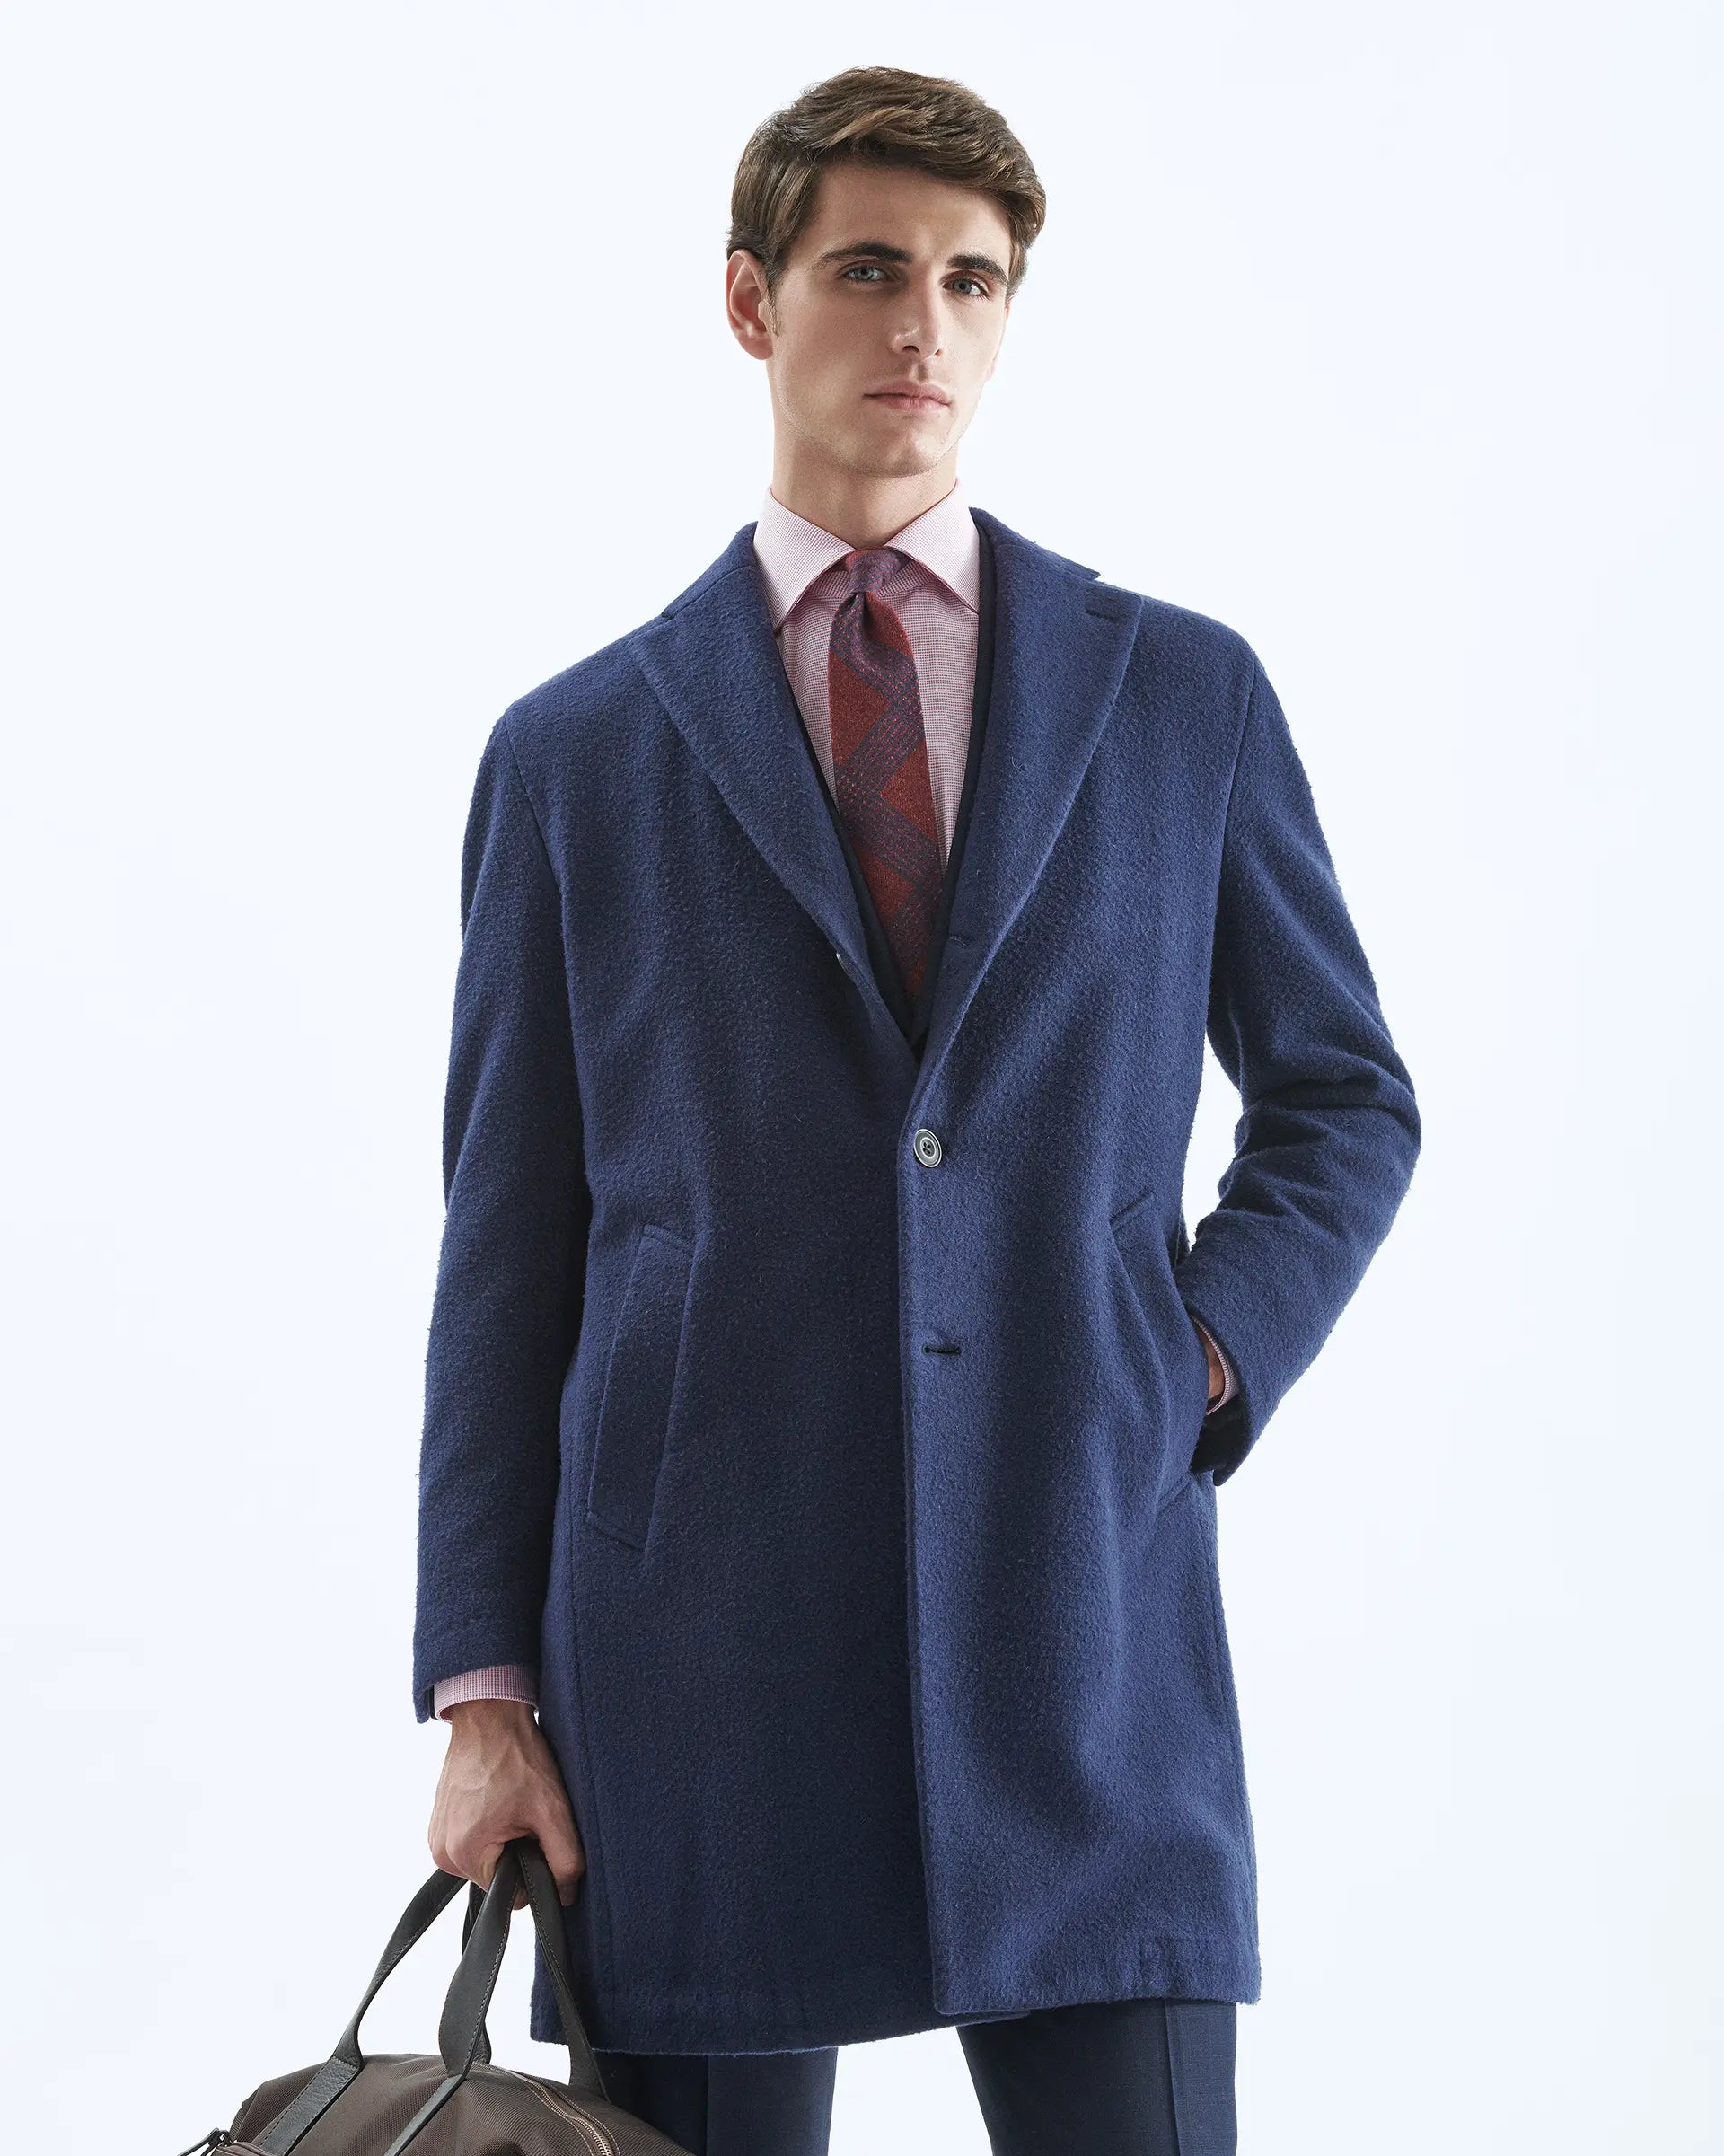 Blue wool blend coat